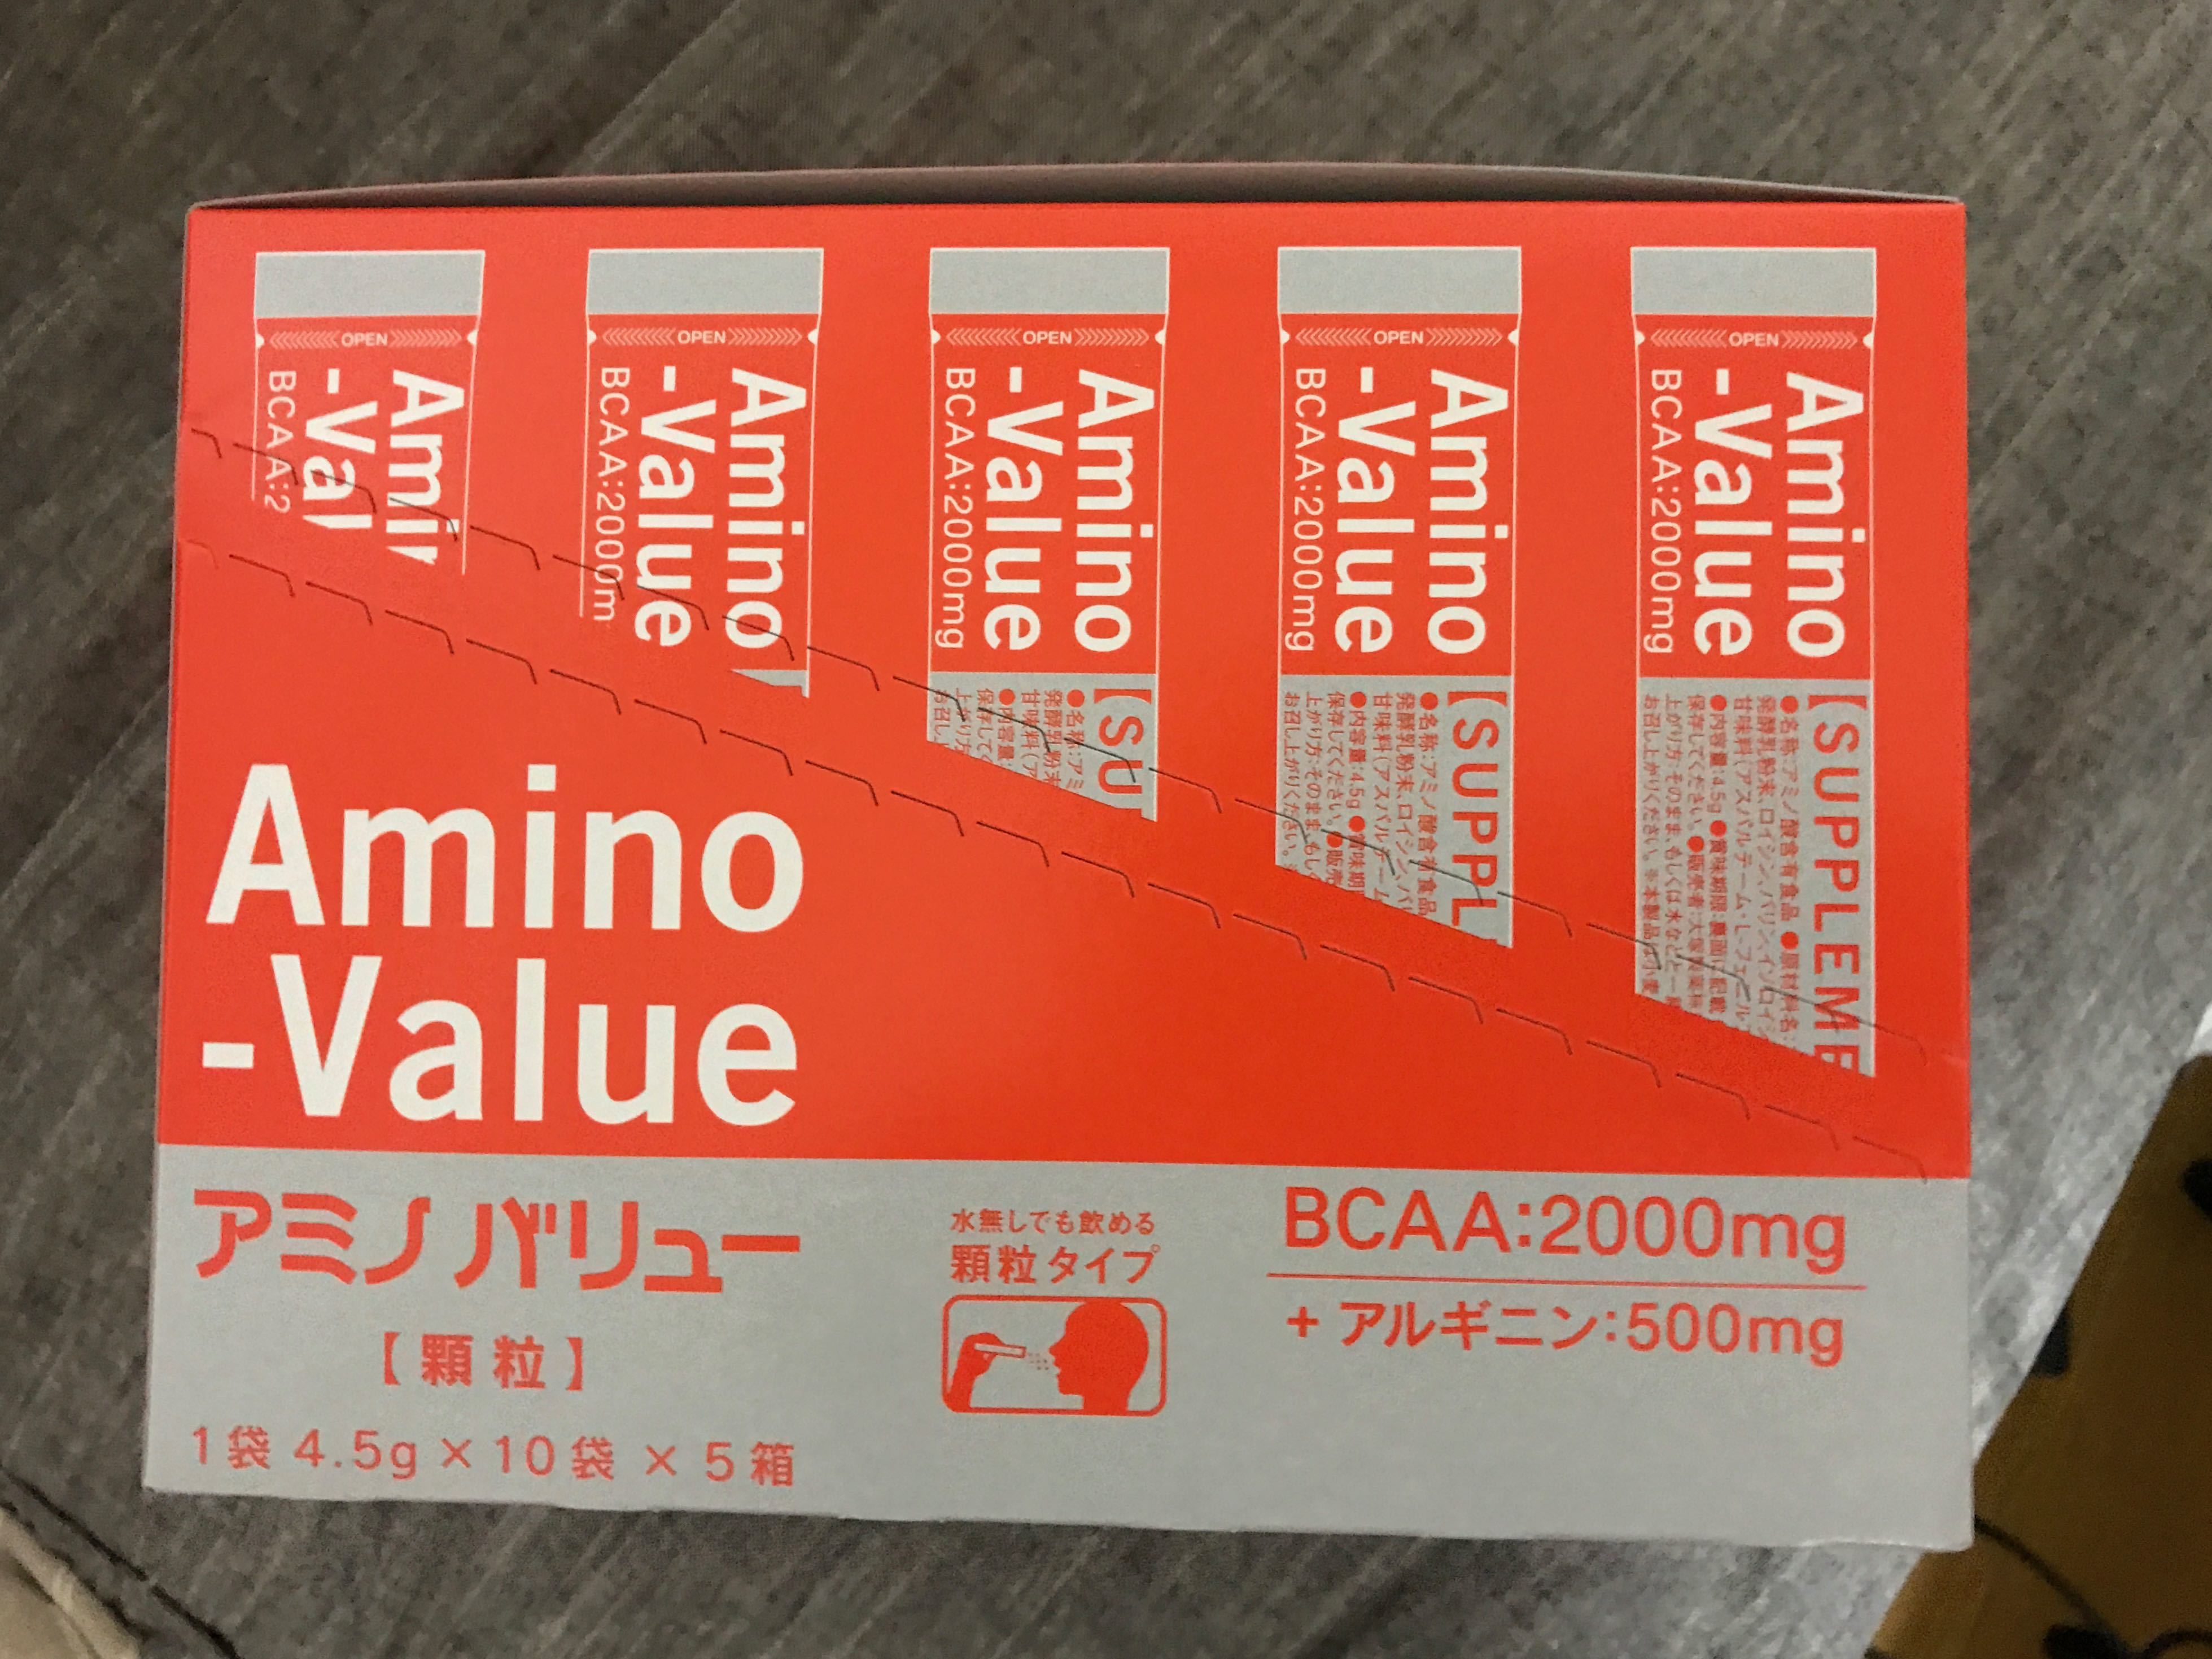 Amino-Value　マラソン